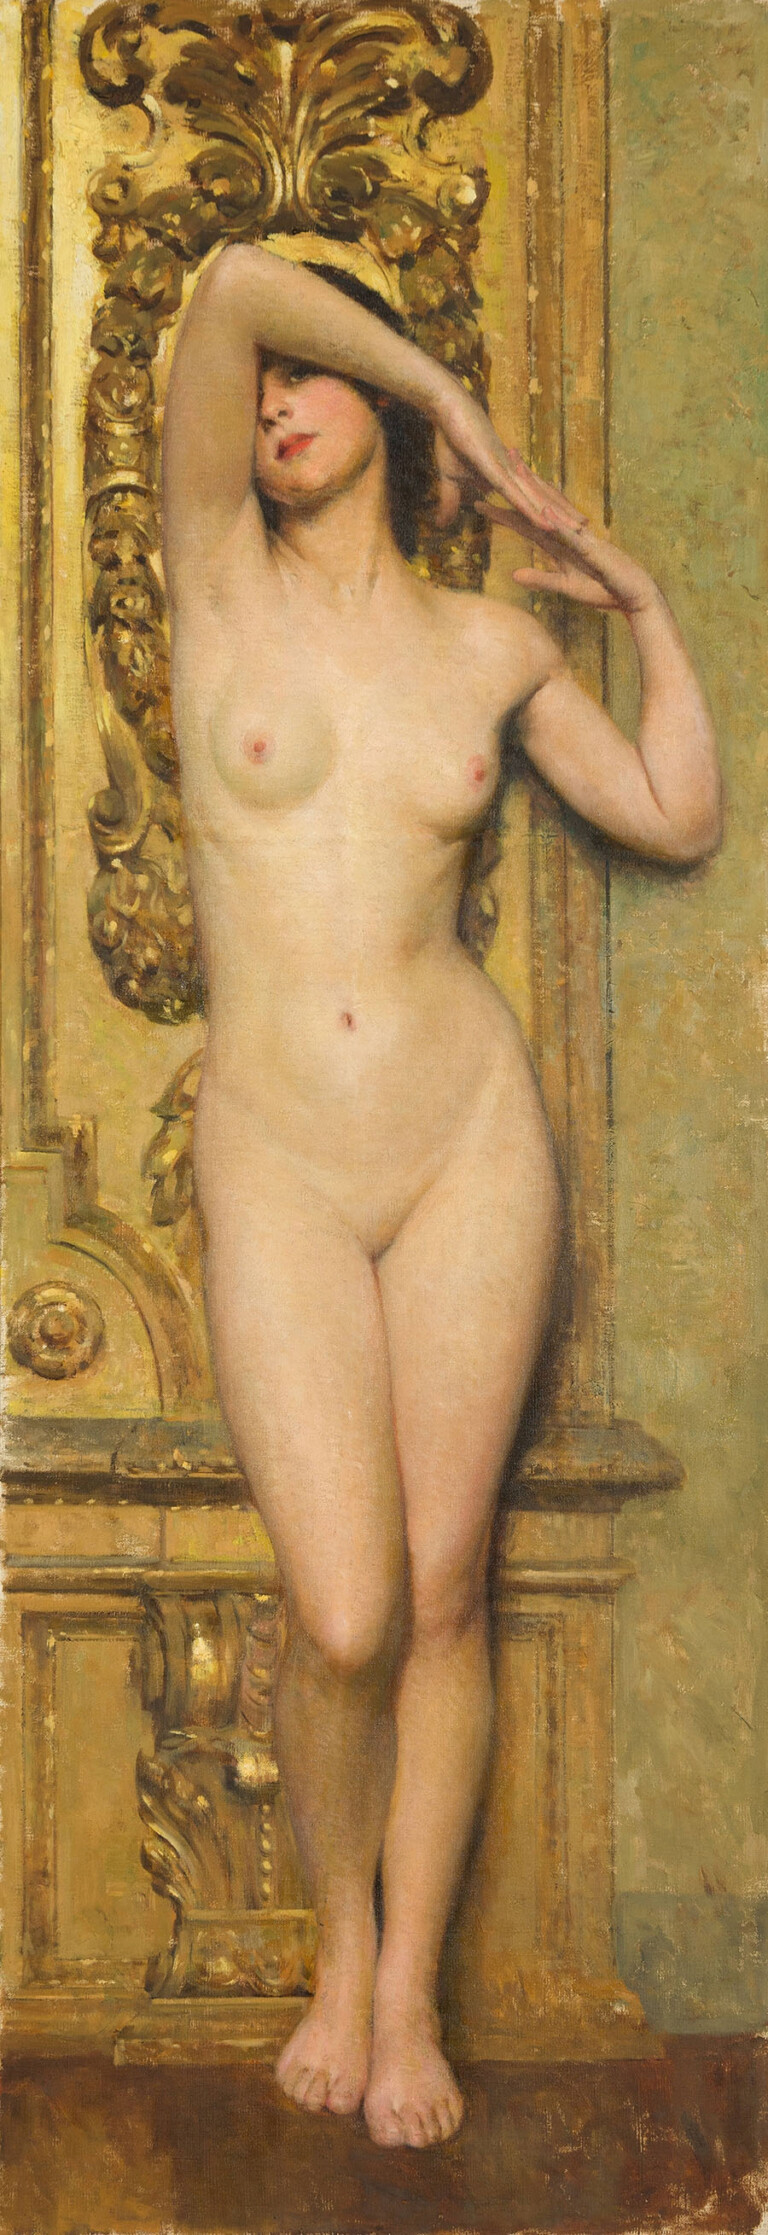 Giacomo Grosso, Nudo di donna, 1915 ca., olio su tela, 200 x 69 cm. Torino, Pinacoteca dell'Accademia Albertina